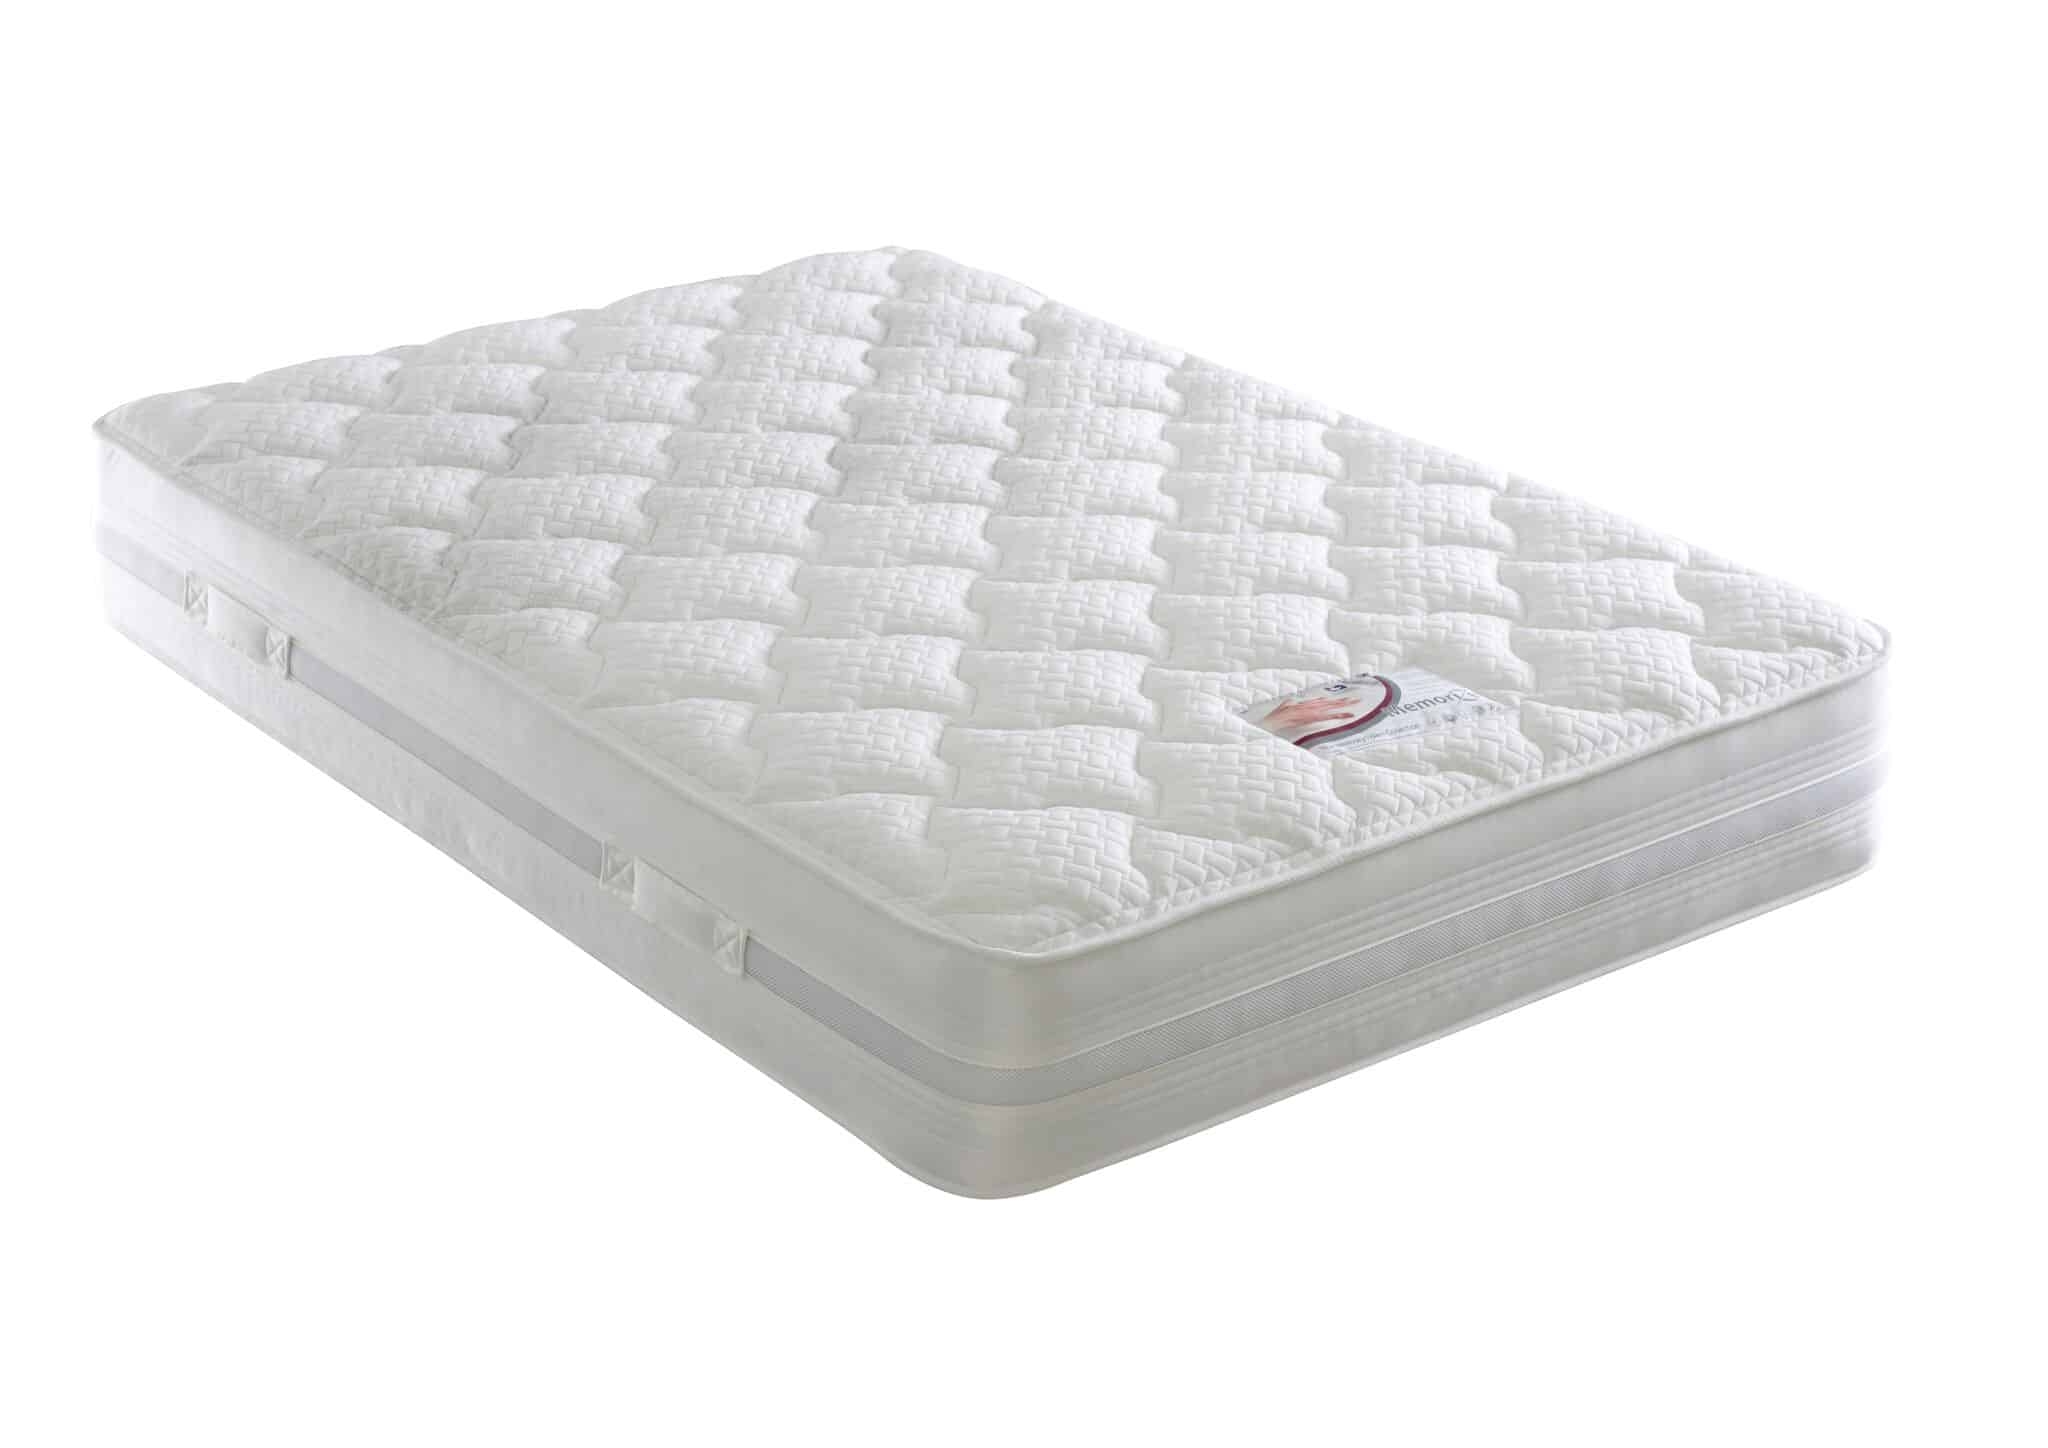 Dura Beds Memory Foam Mattress – Memorize Mattress – King Size – Airflow Cushion Medium Firmness Mattress